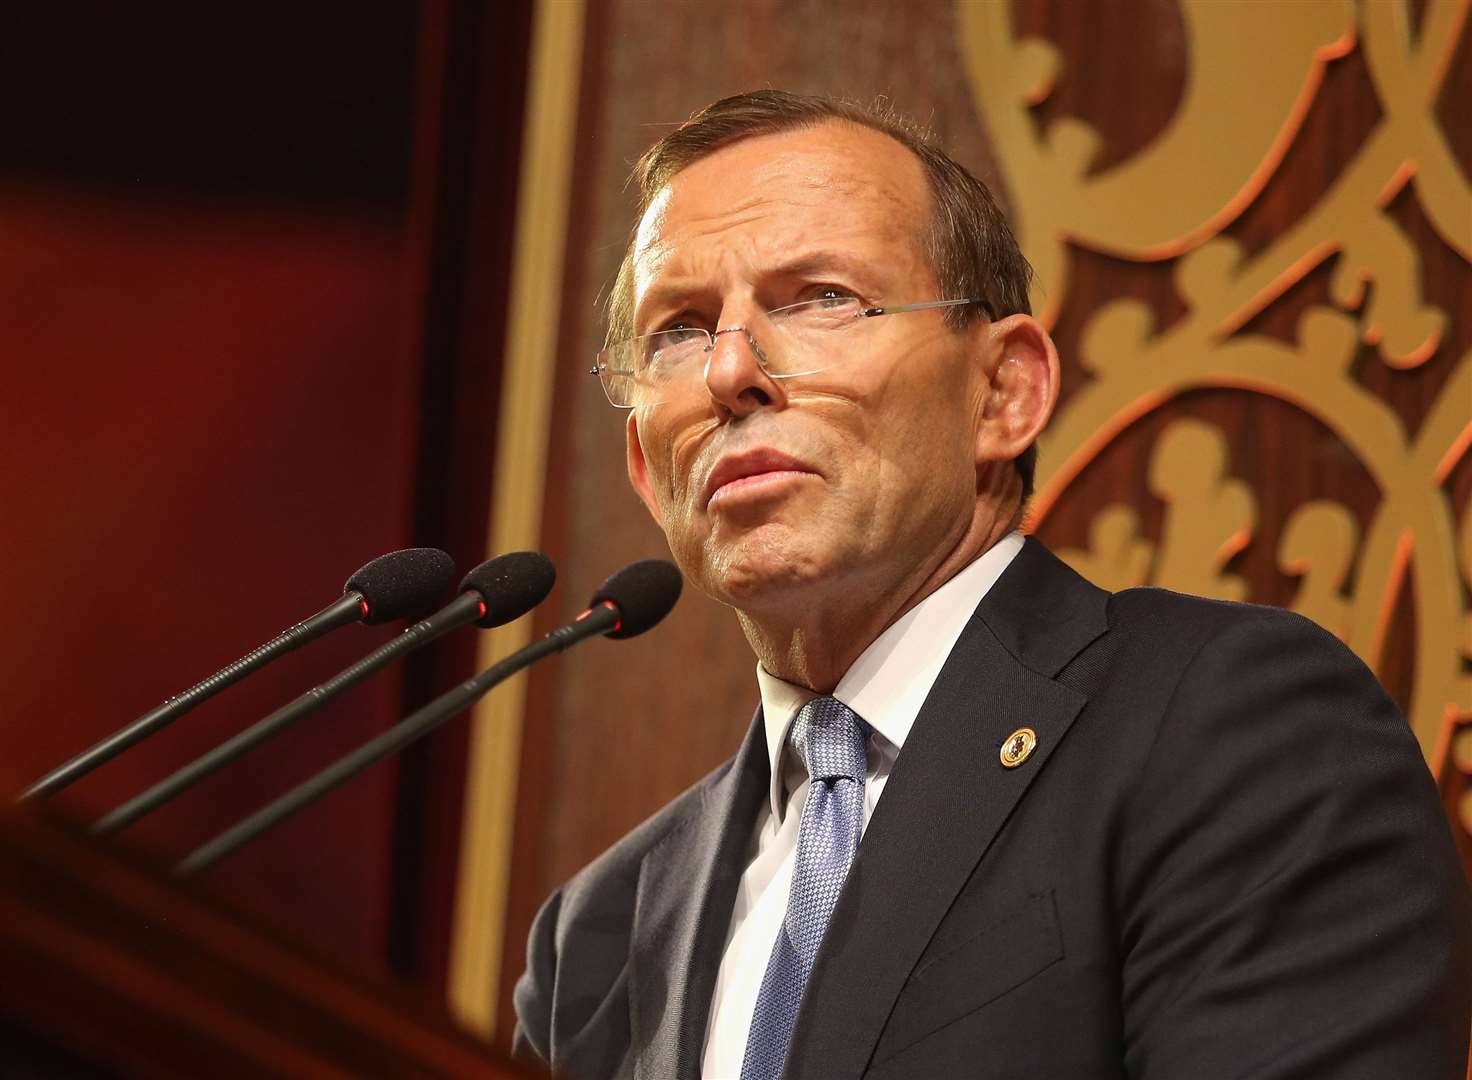 Former Australian prime minister Tony Abbott (Chris Jackson/PA)